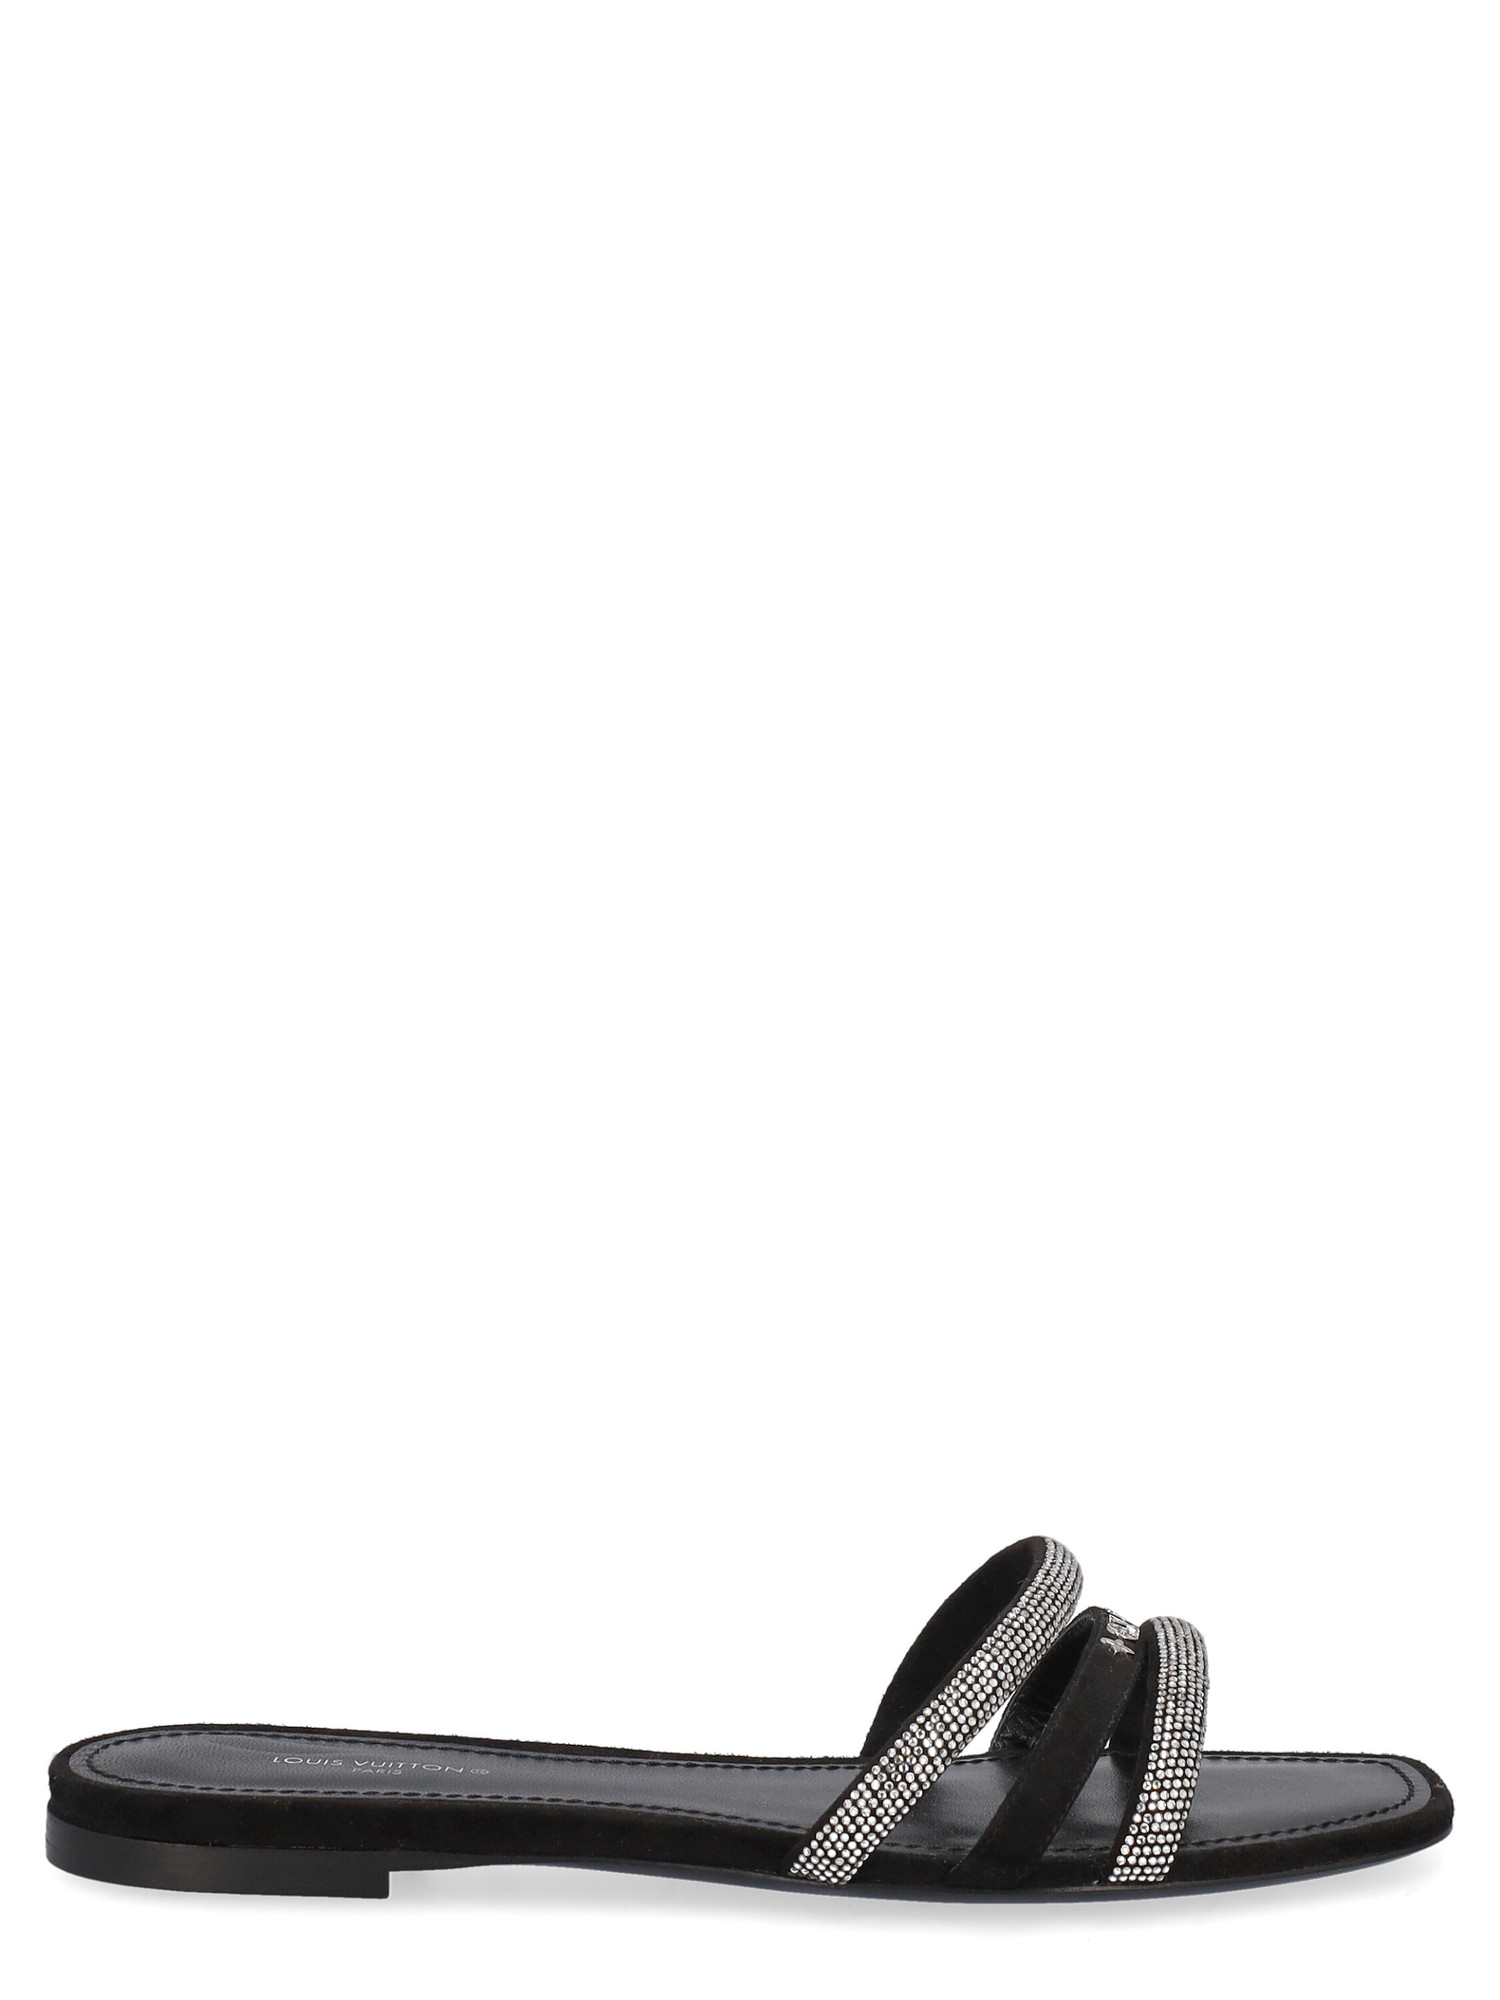 Slippers Pour Femme - Louis Vuitton - En Leather Black - Taille: IT 37 - EU 37